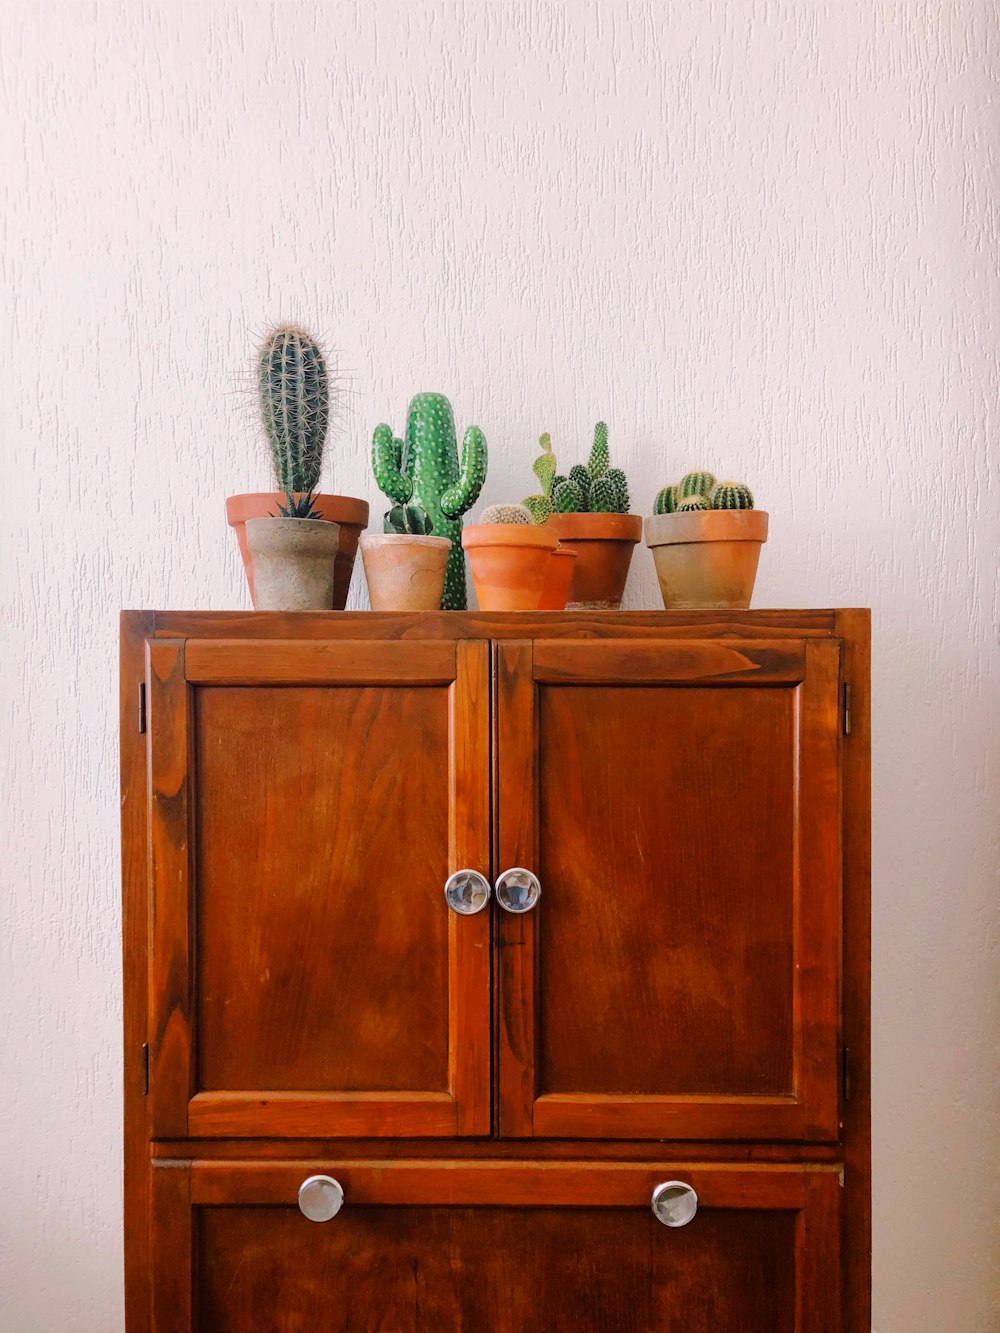 plante de cactus vert sur armoire en bois marron